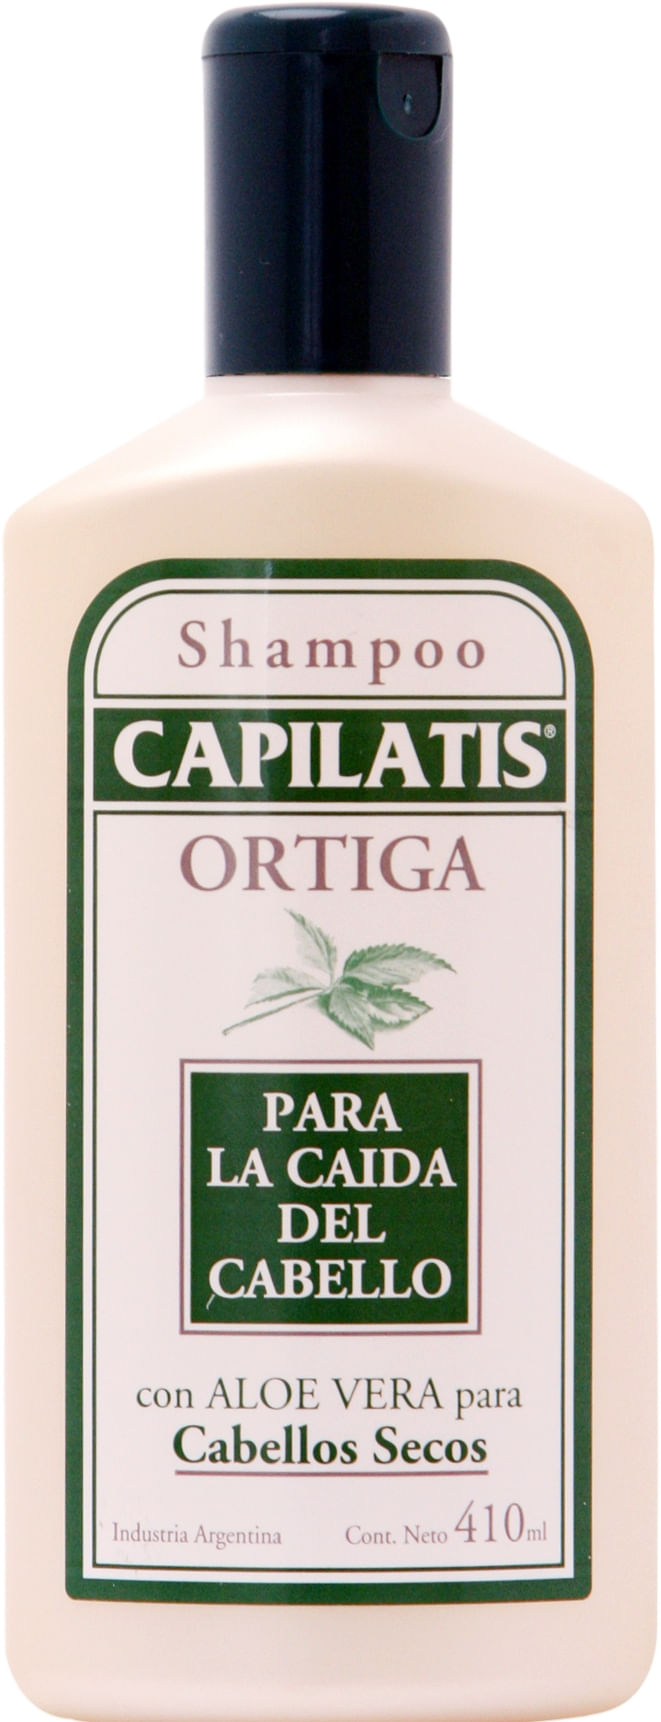 Shampoo-control-caida-pelo-seco-con-Aloe-Vera-x-410-ml